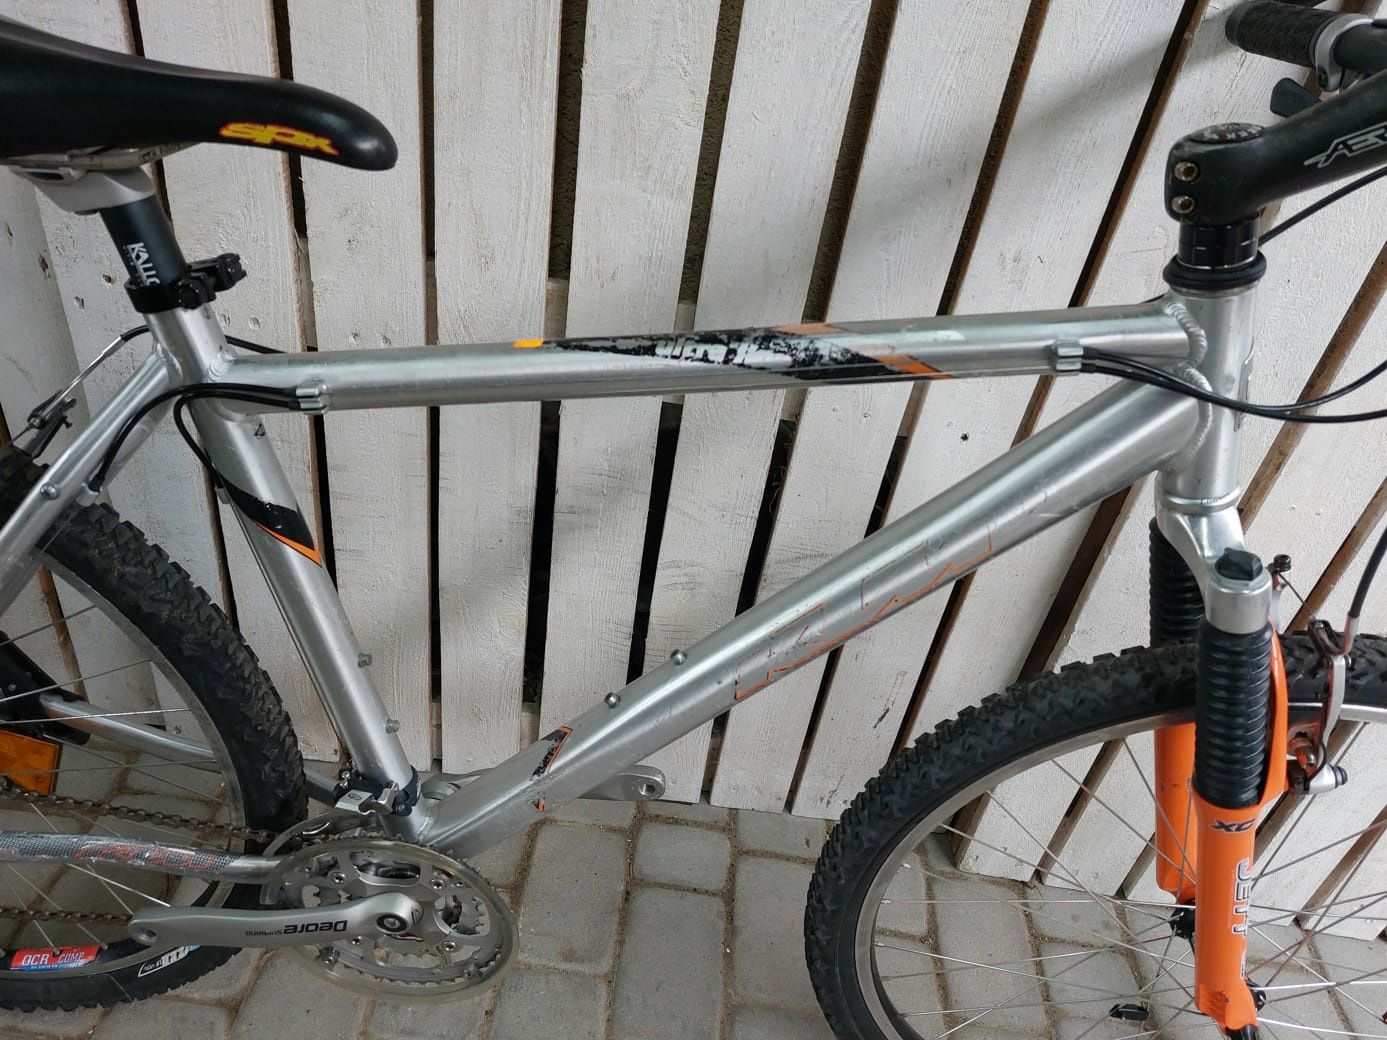 Алюмінієвий велосипед гірський бу з Європи KTM 26 M37